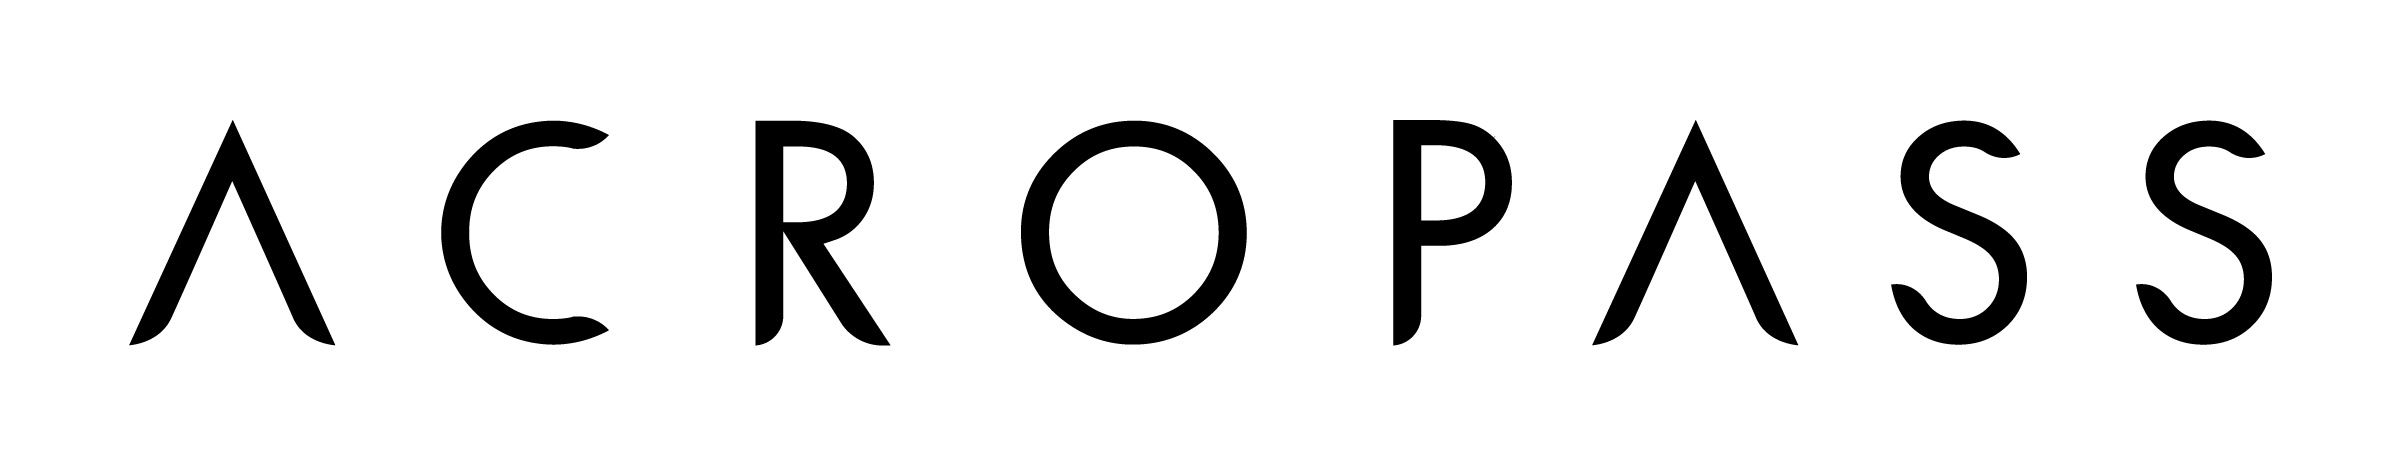 Acropass logo